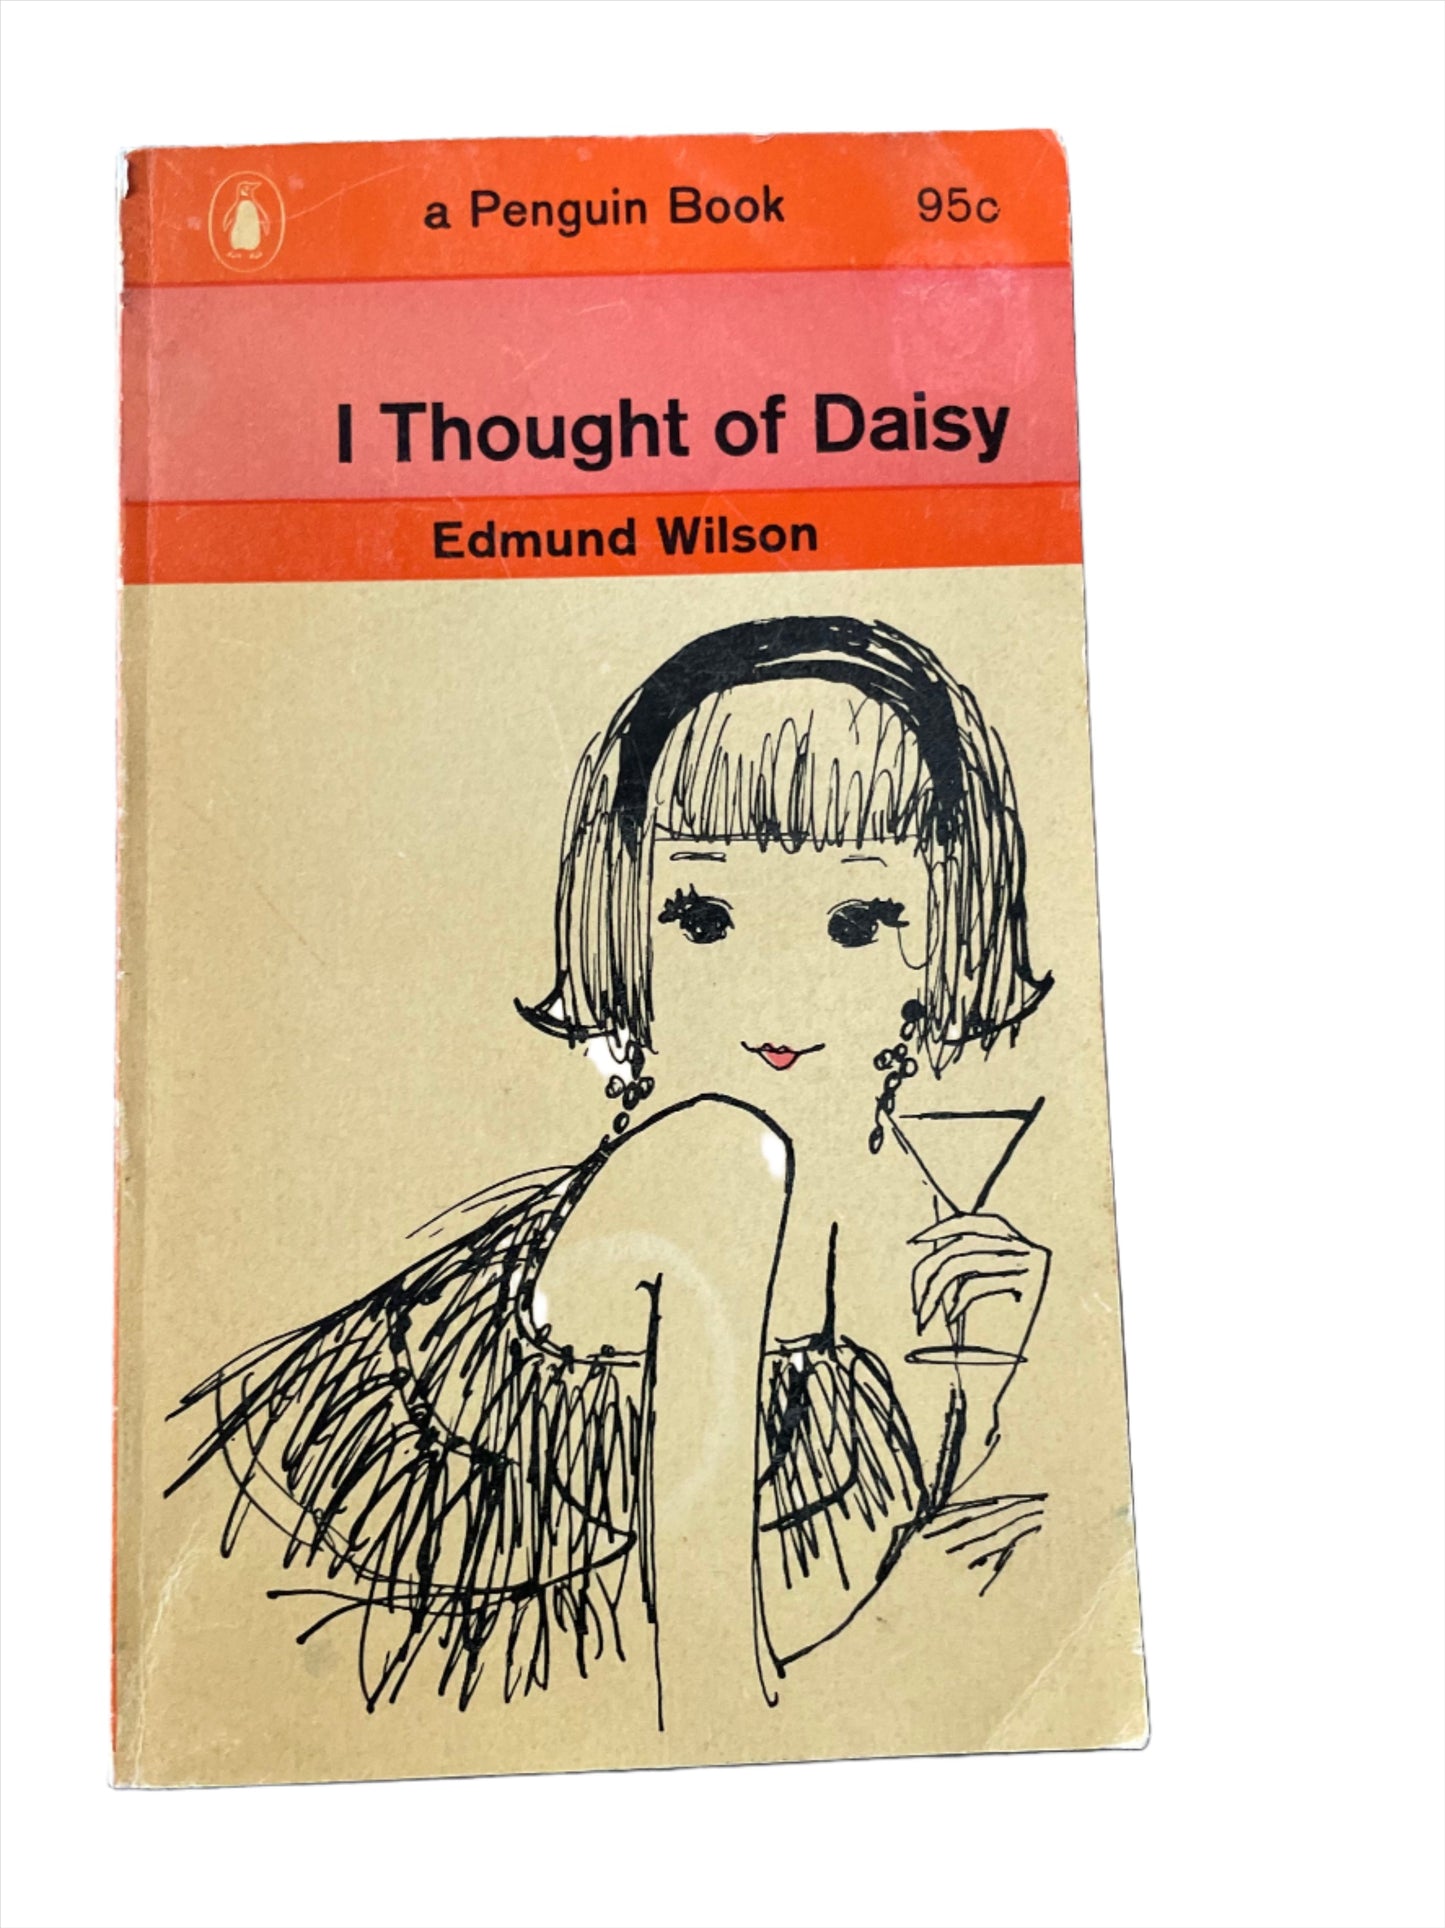 I Thought of Daisy